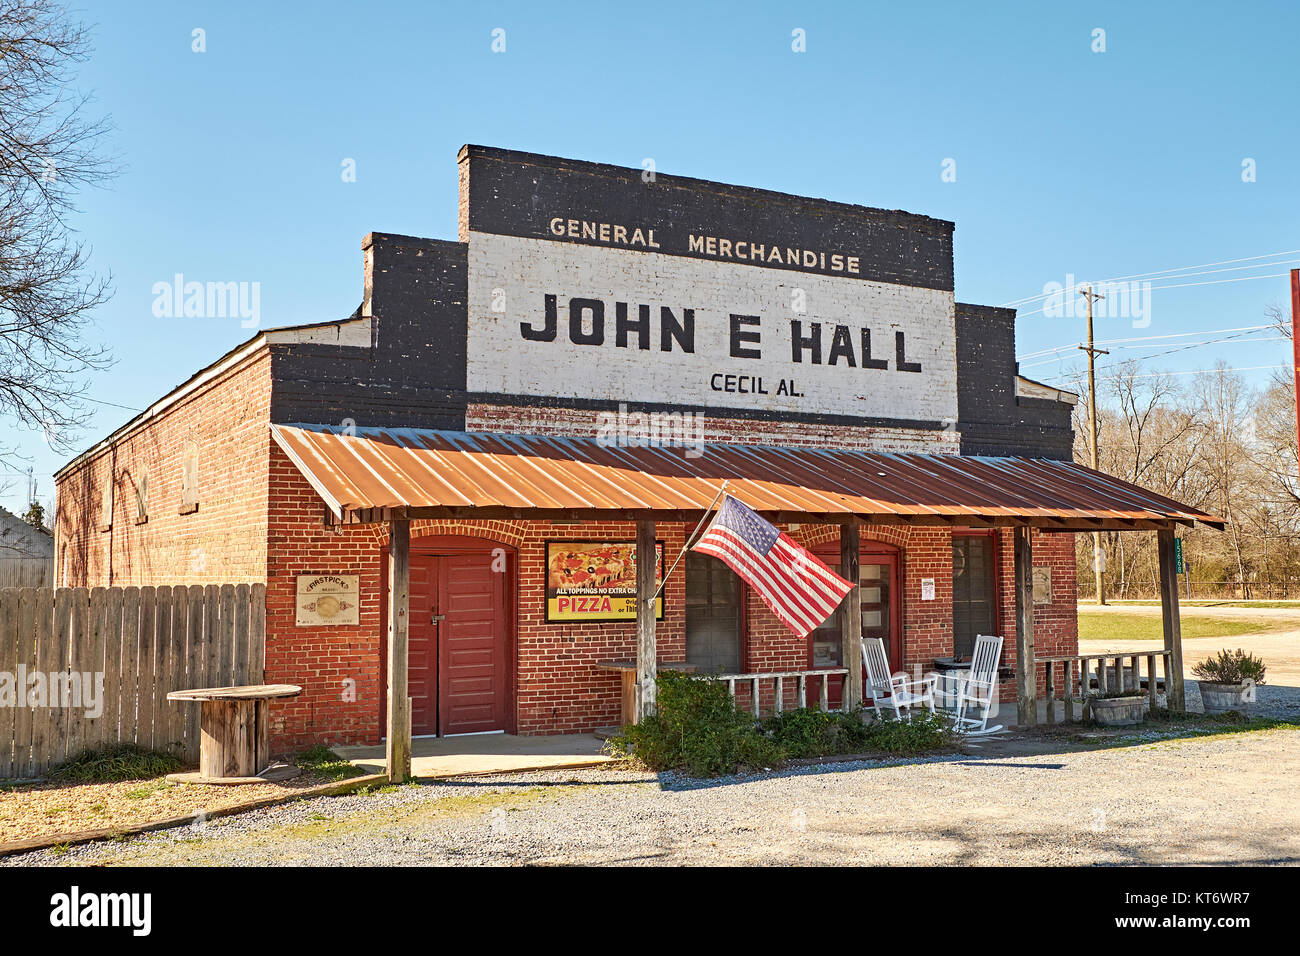 Les petites entreprises rurales, John E. Hall Marchandise générale, est un petit marché pour l'artisanat, fabriqués localement et d'antiquités en petite communauté Cecil Alabama, Etats-Unis. Banque D'Images